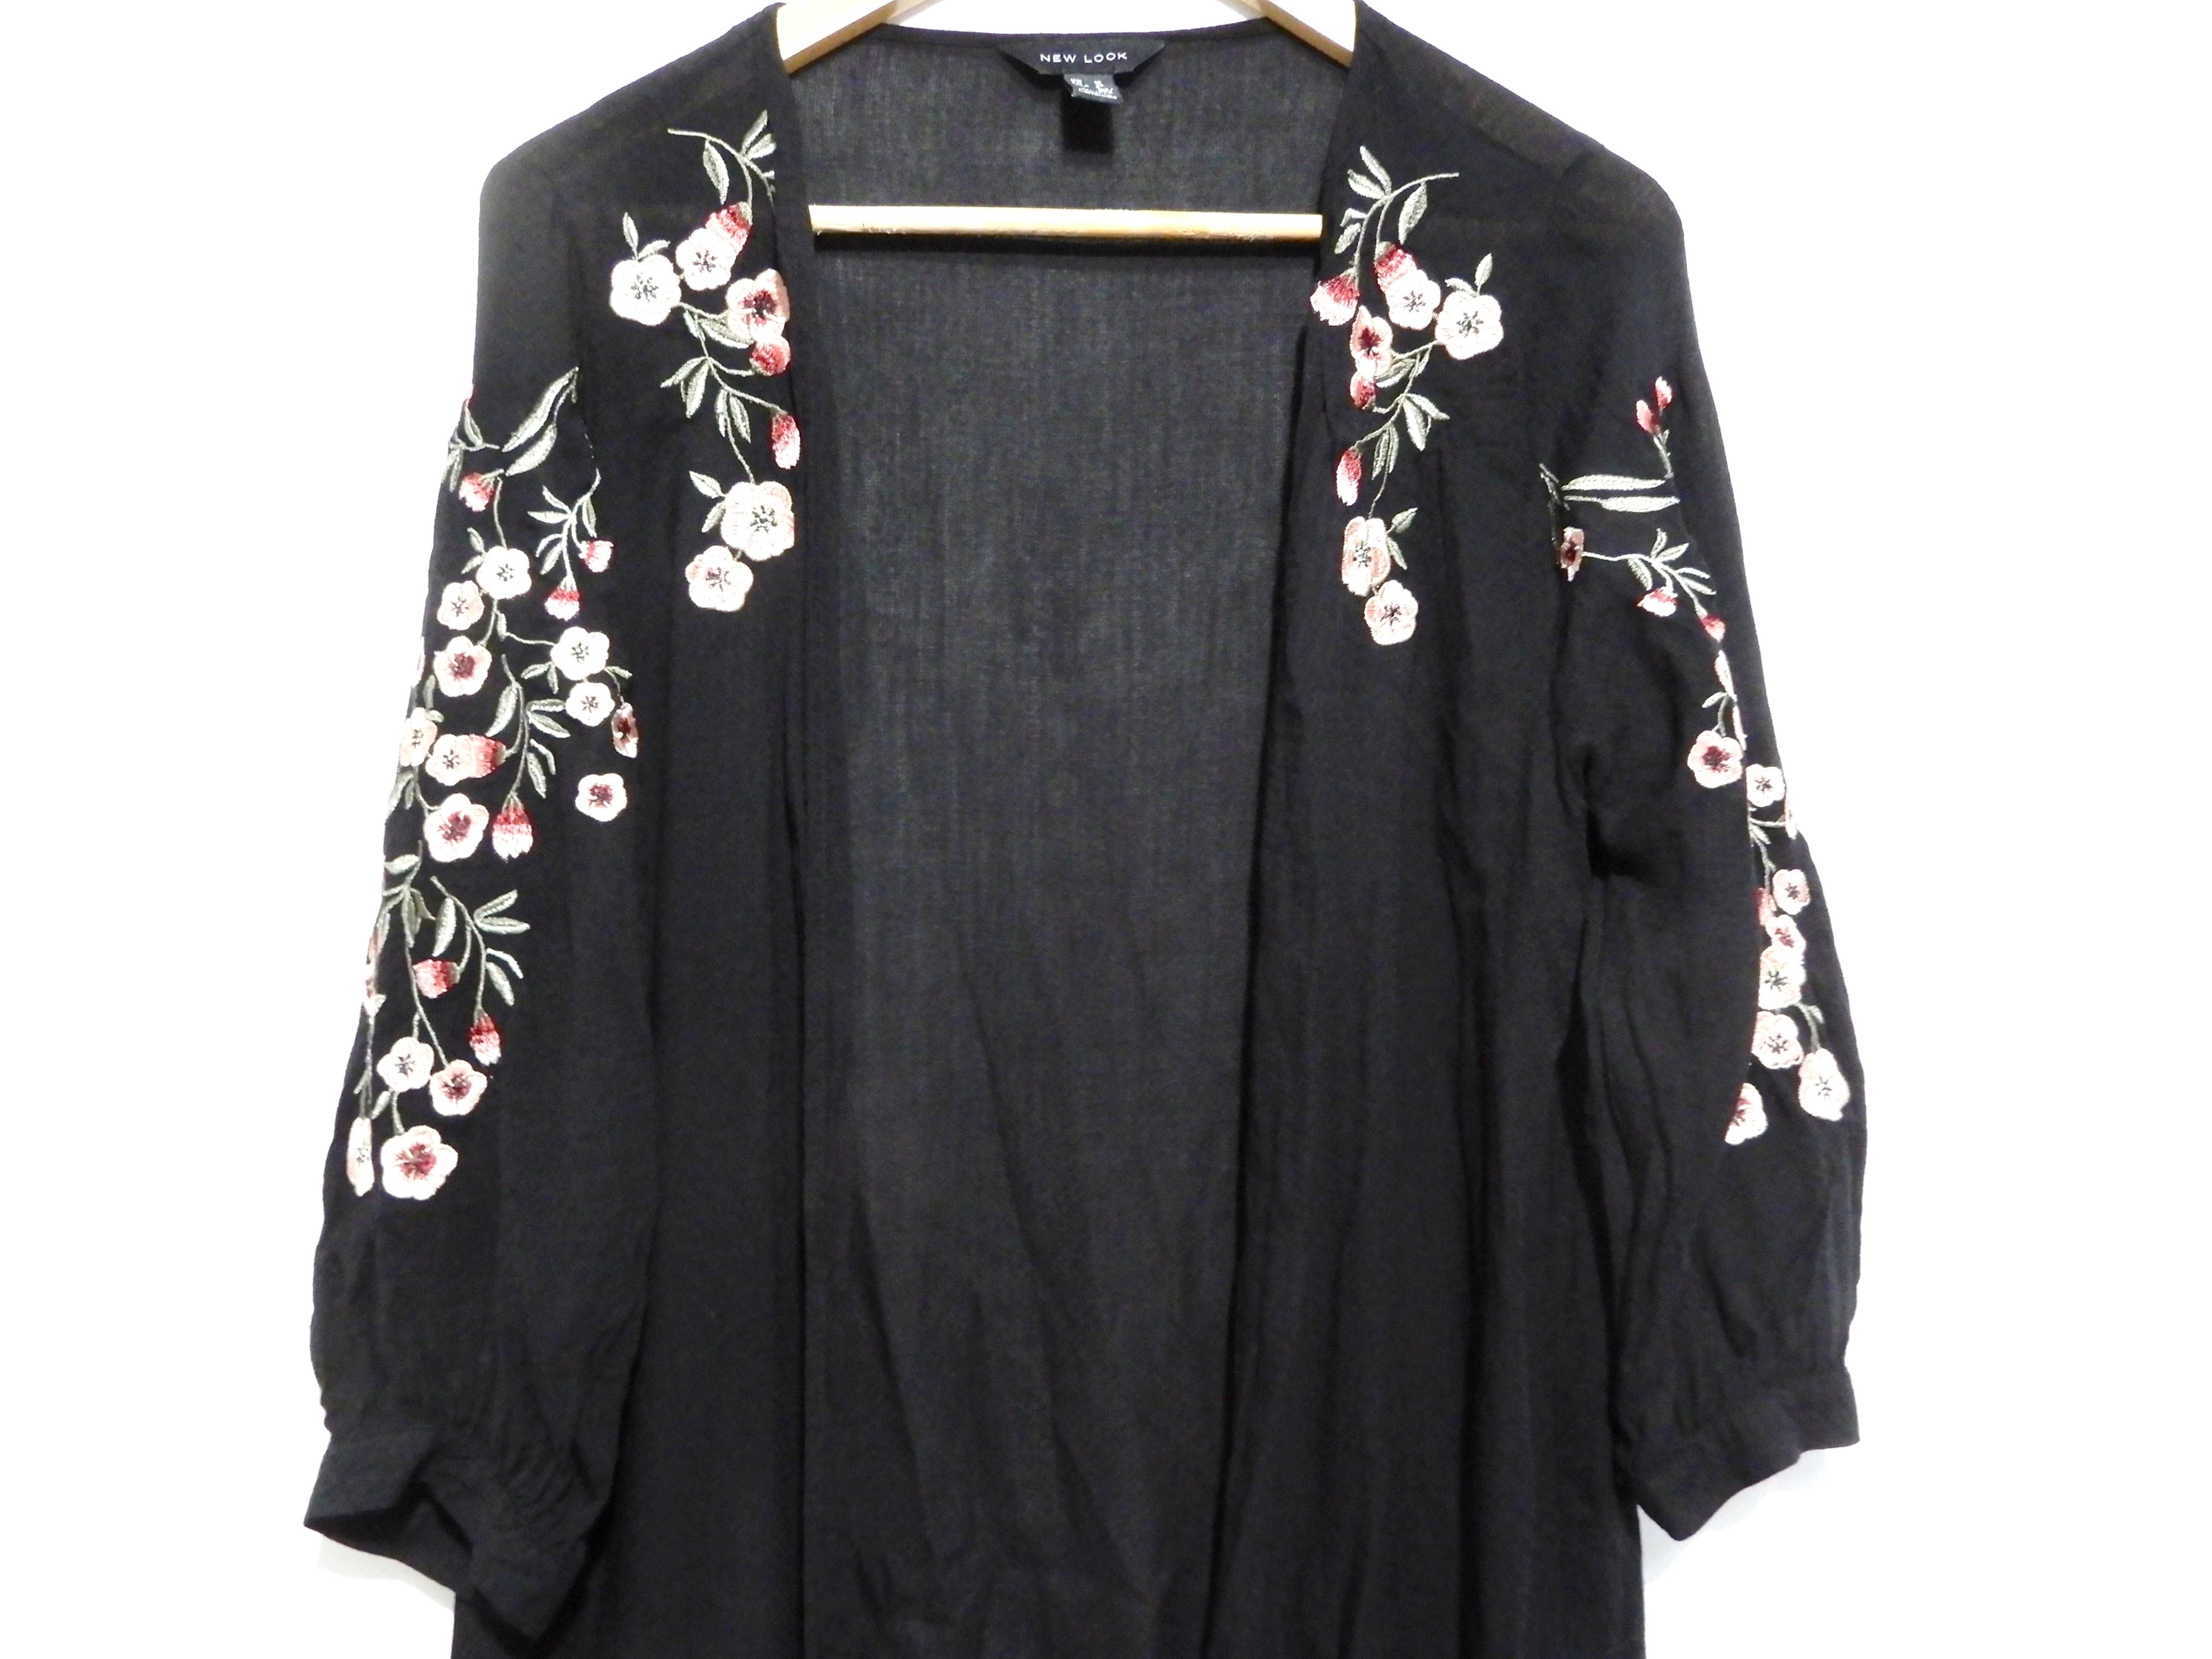 Narzutka kardigan kimono czarne haft kwiaty New Look 38 M